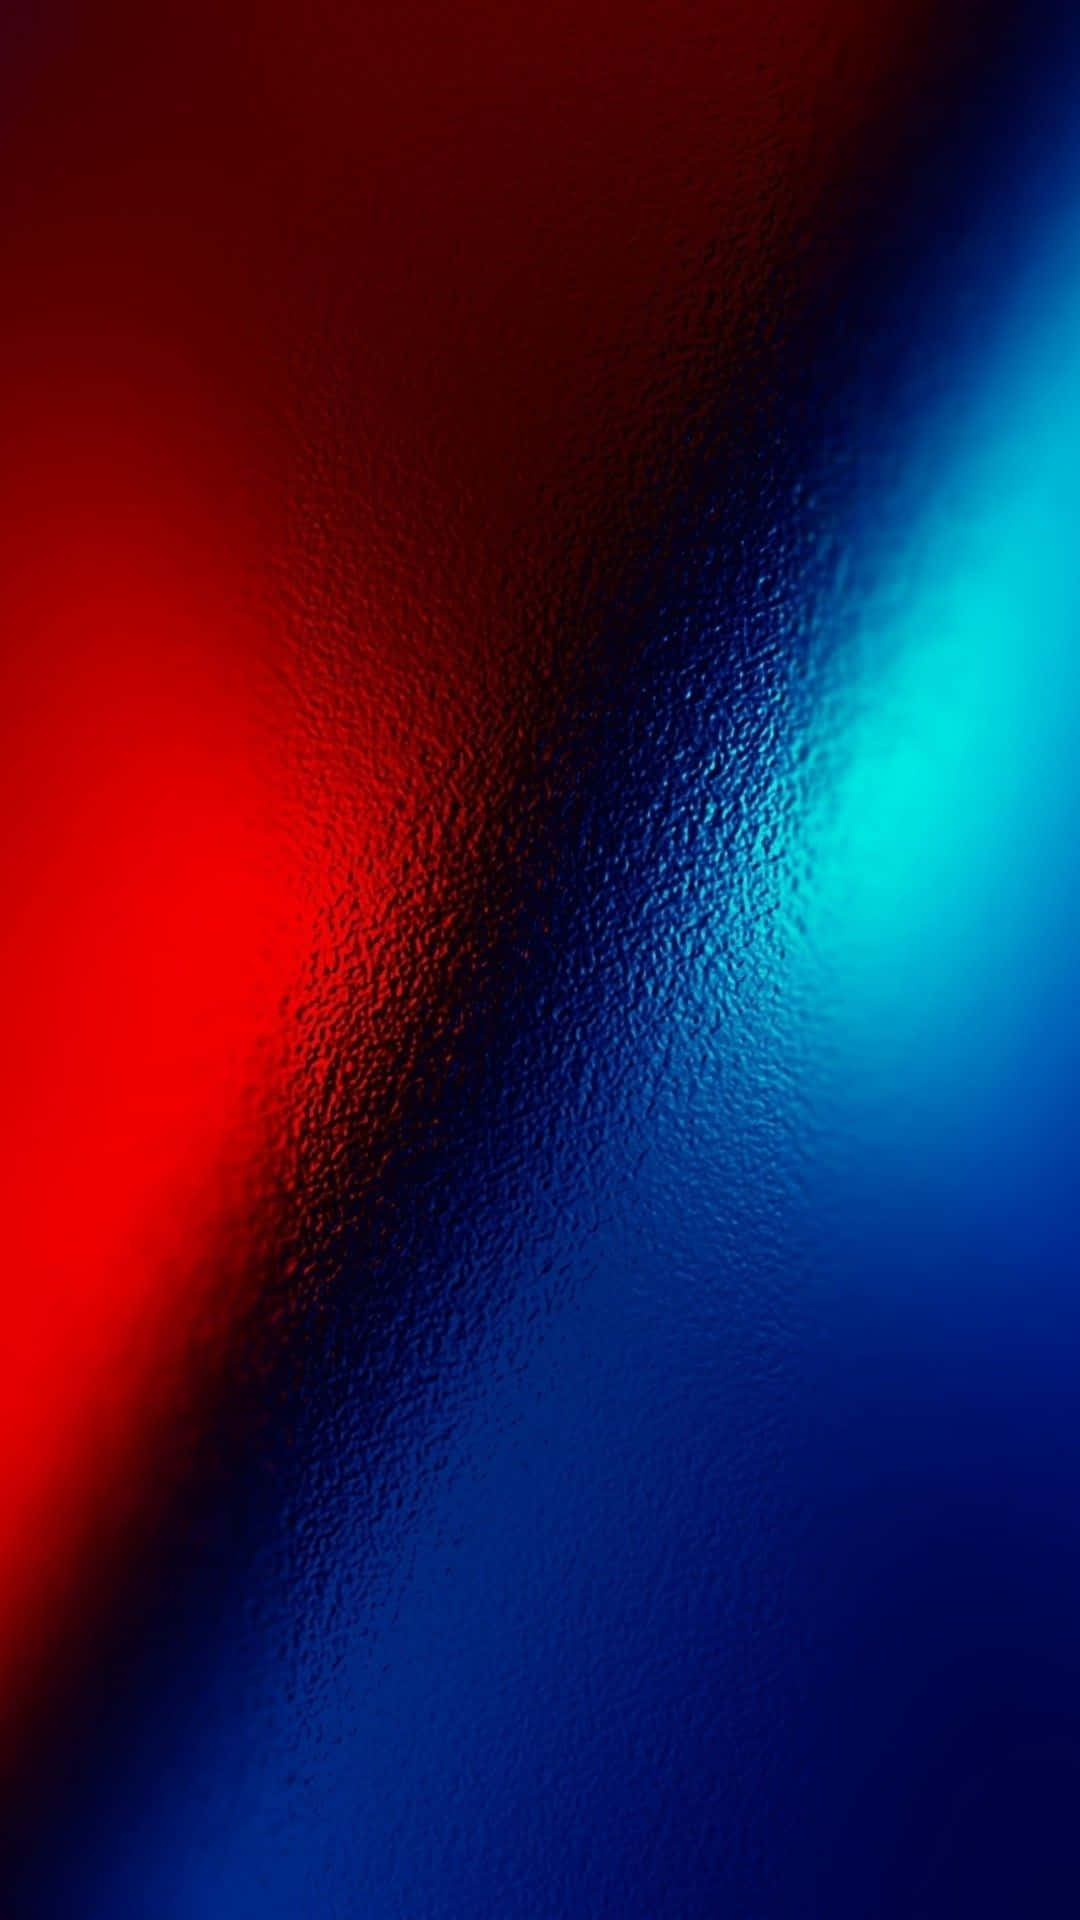 En stimulerende blanding af blå og rød i en abstrakt baggrund.